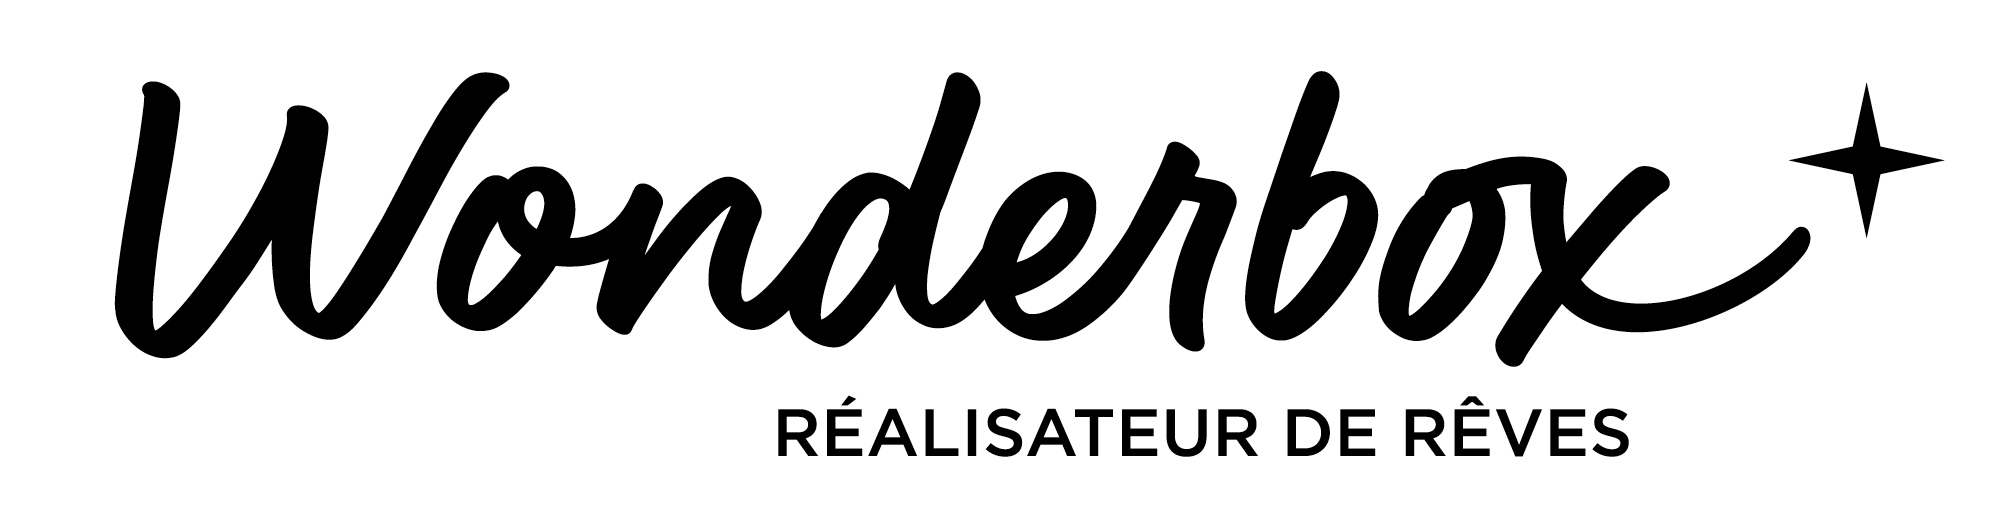 Wonderbox, réalisateur de rêves (logo)